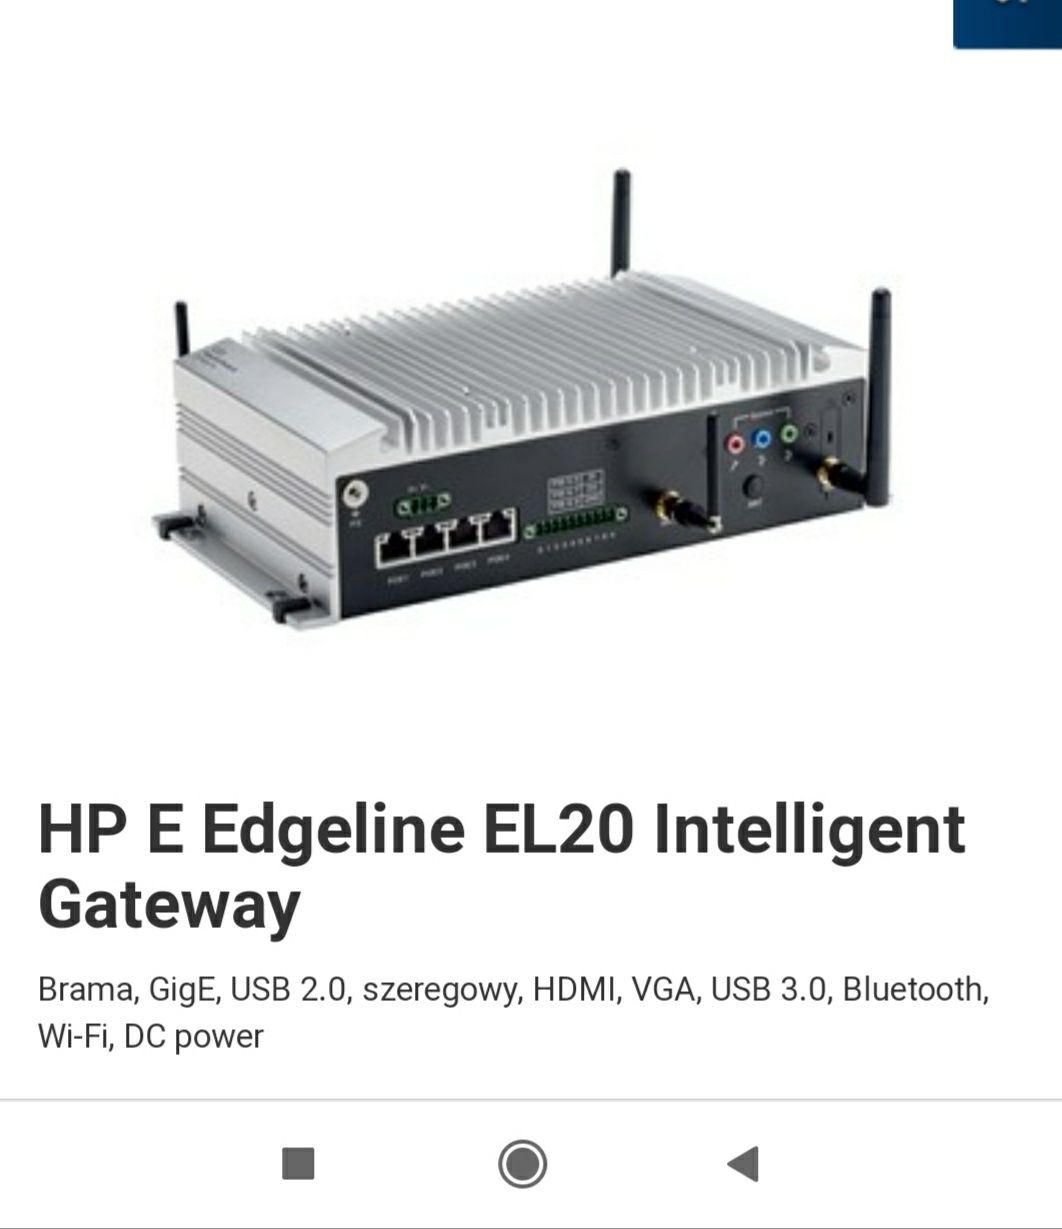 Brama HP e edgeline el20 system zarządzania siecią